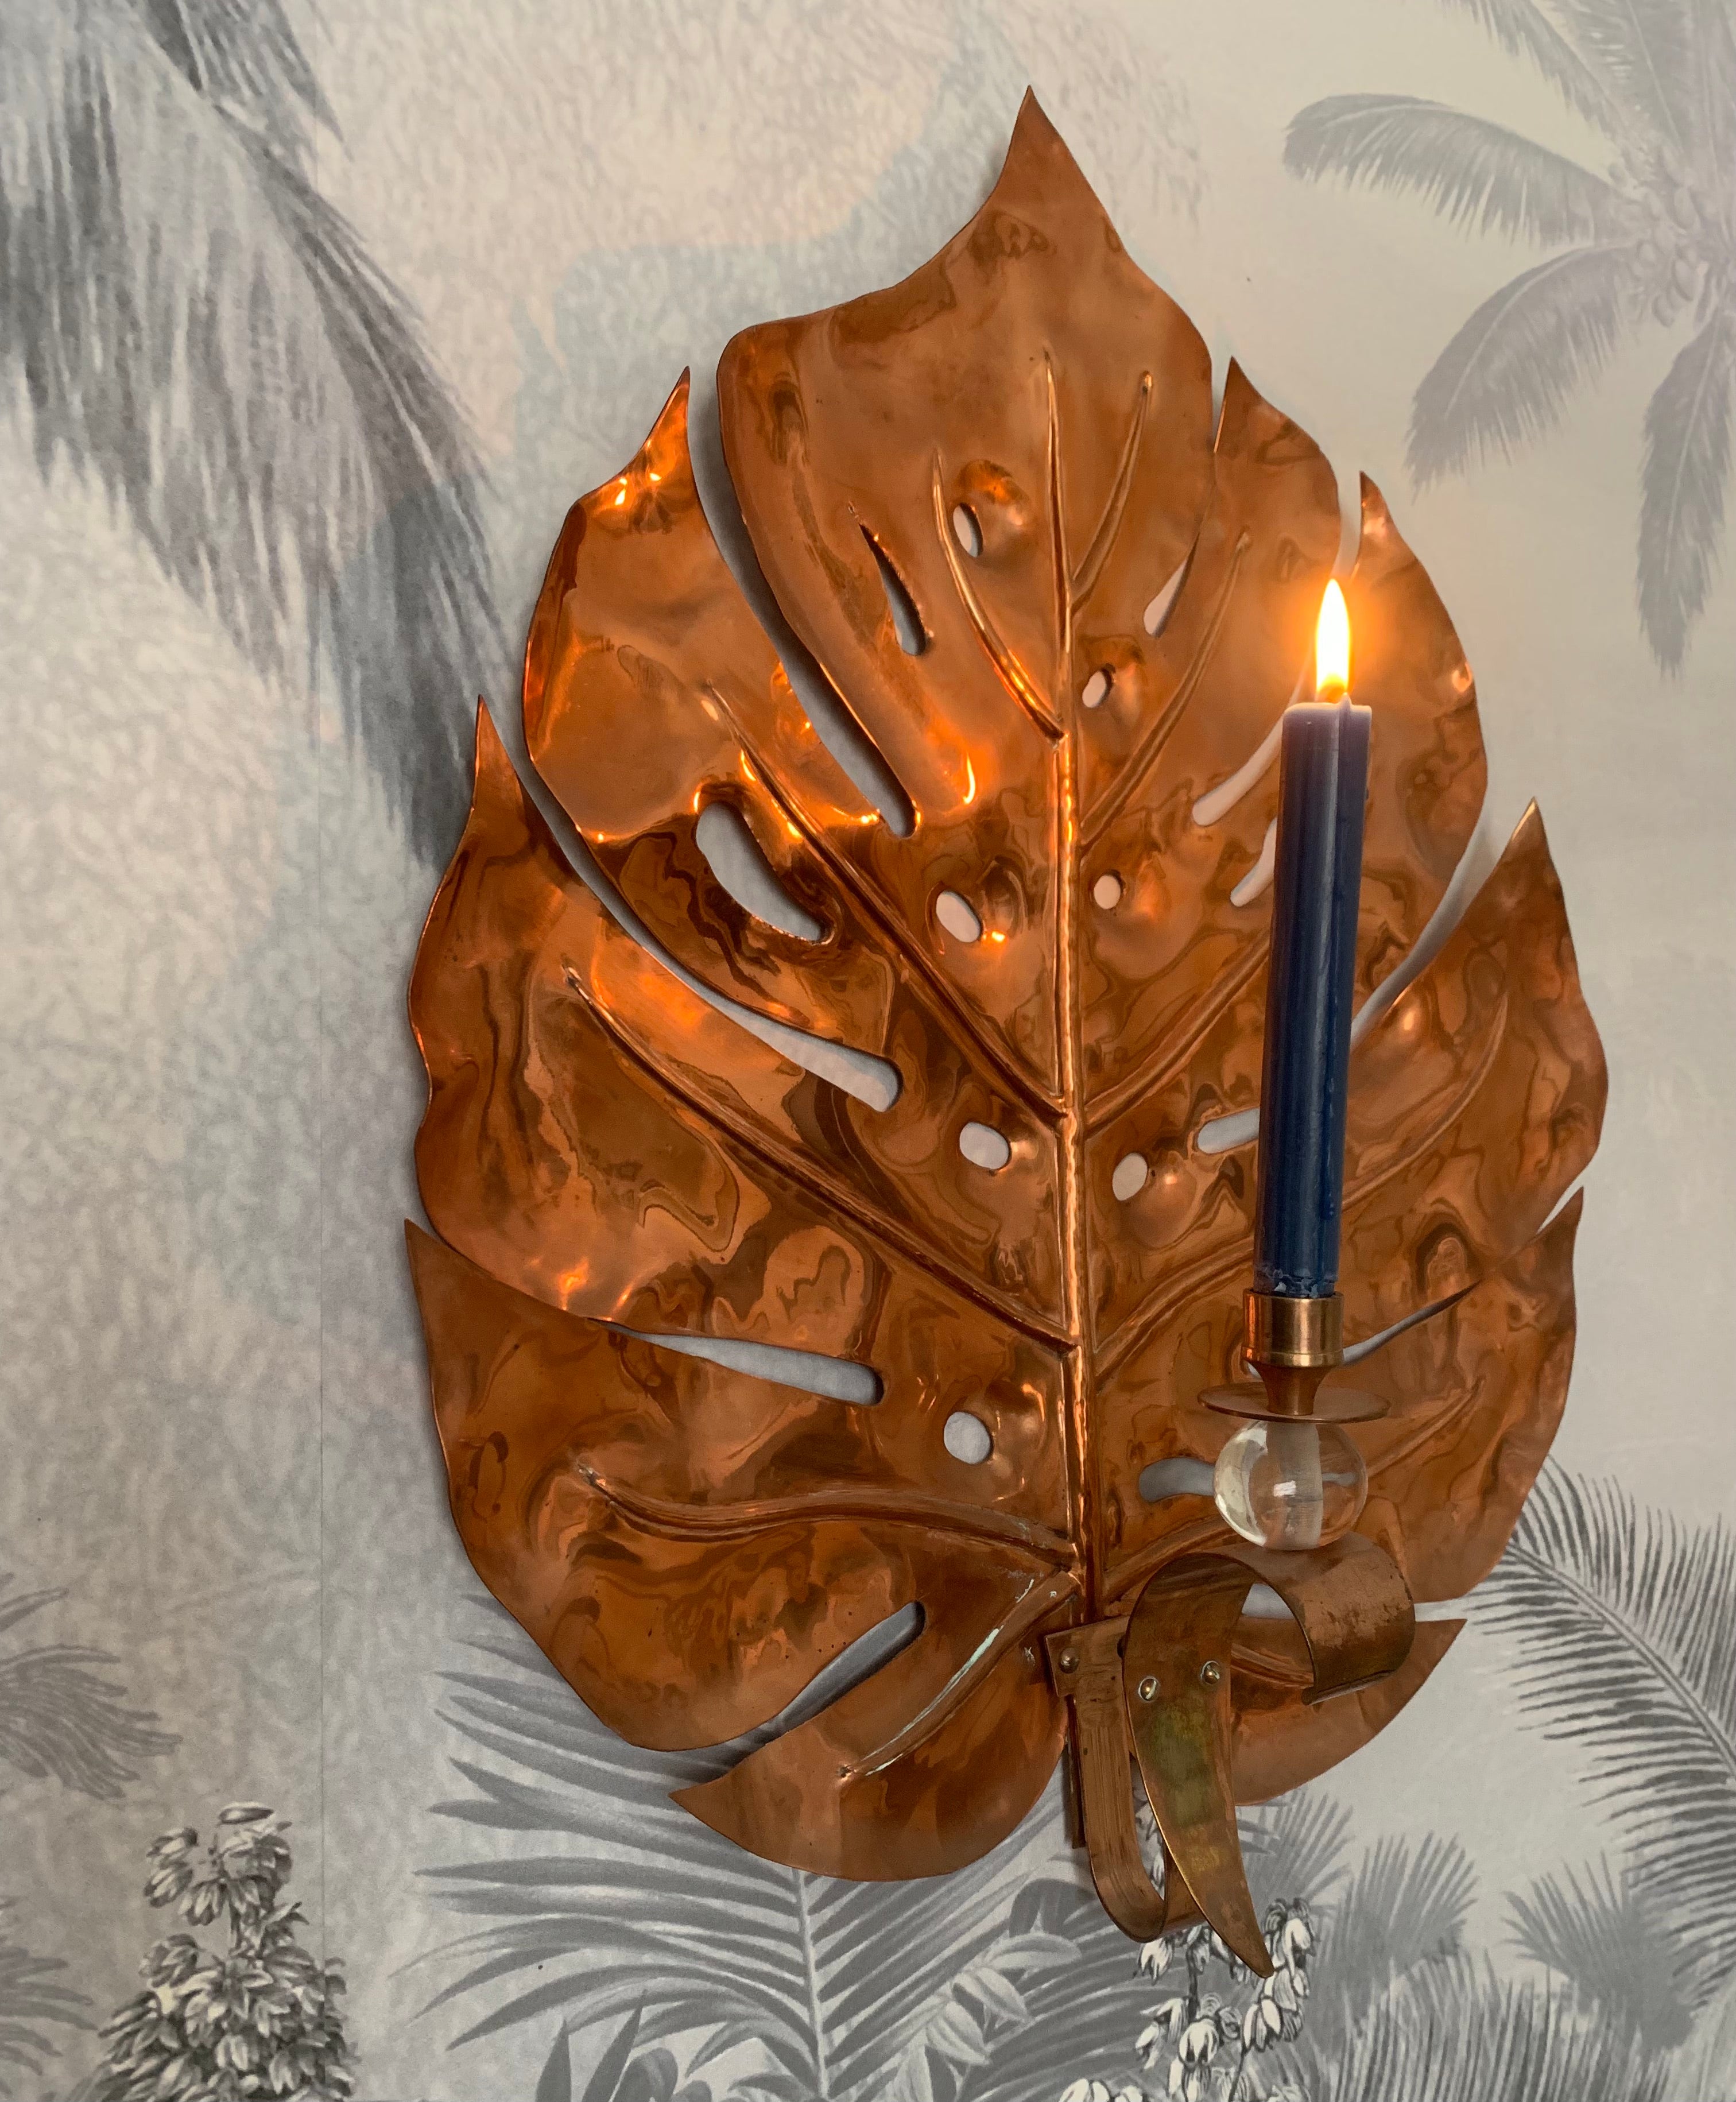 SALE Large copper Leaf candle holder, 56 cm high